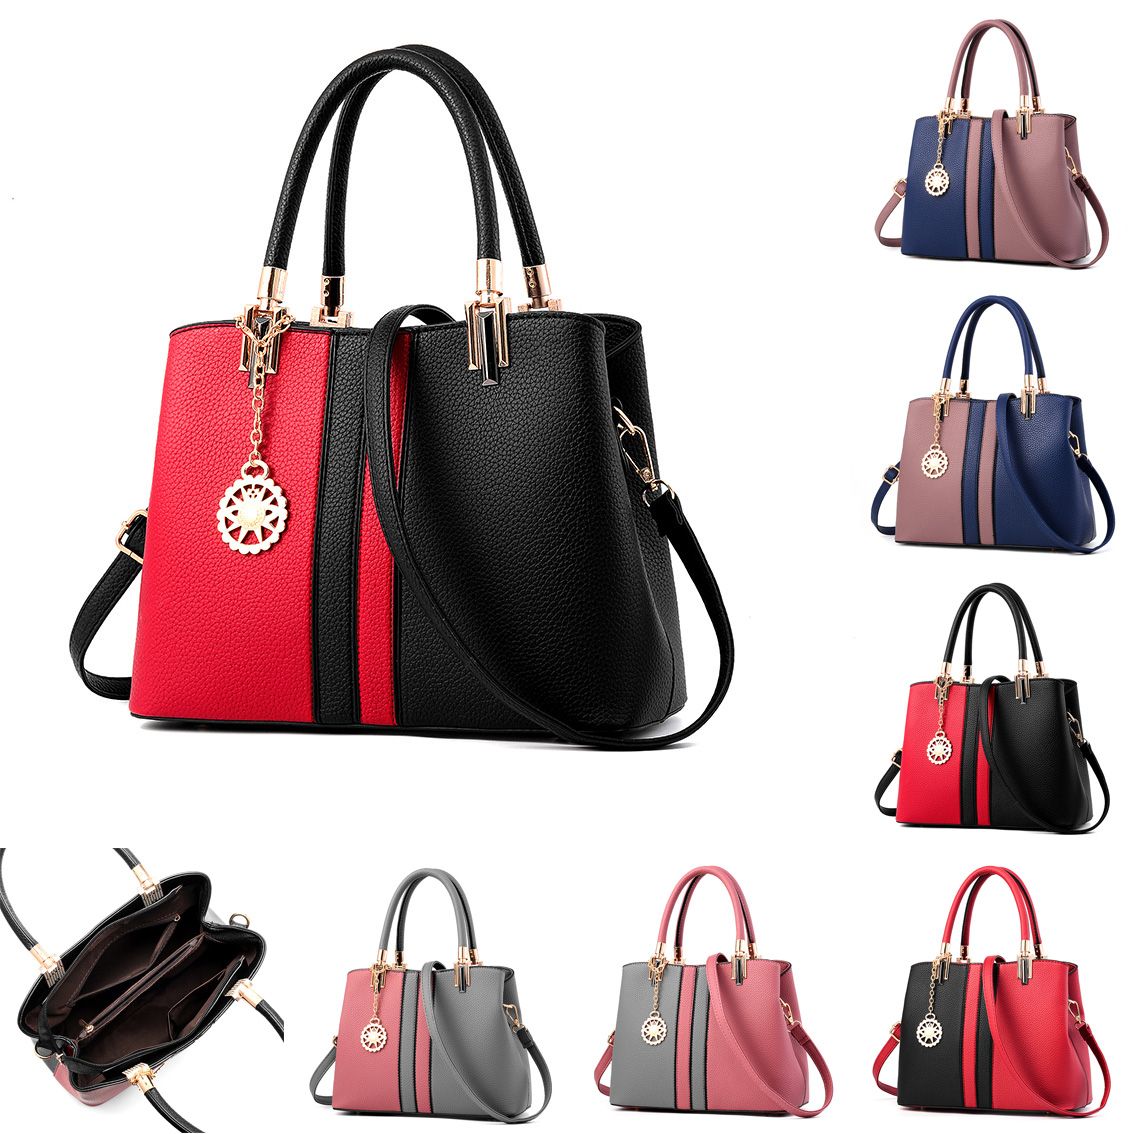 Women Large Handbags Celebrity Tote Bag Designer Structured Large College Fashion Bags Designer ...